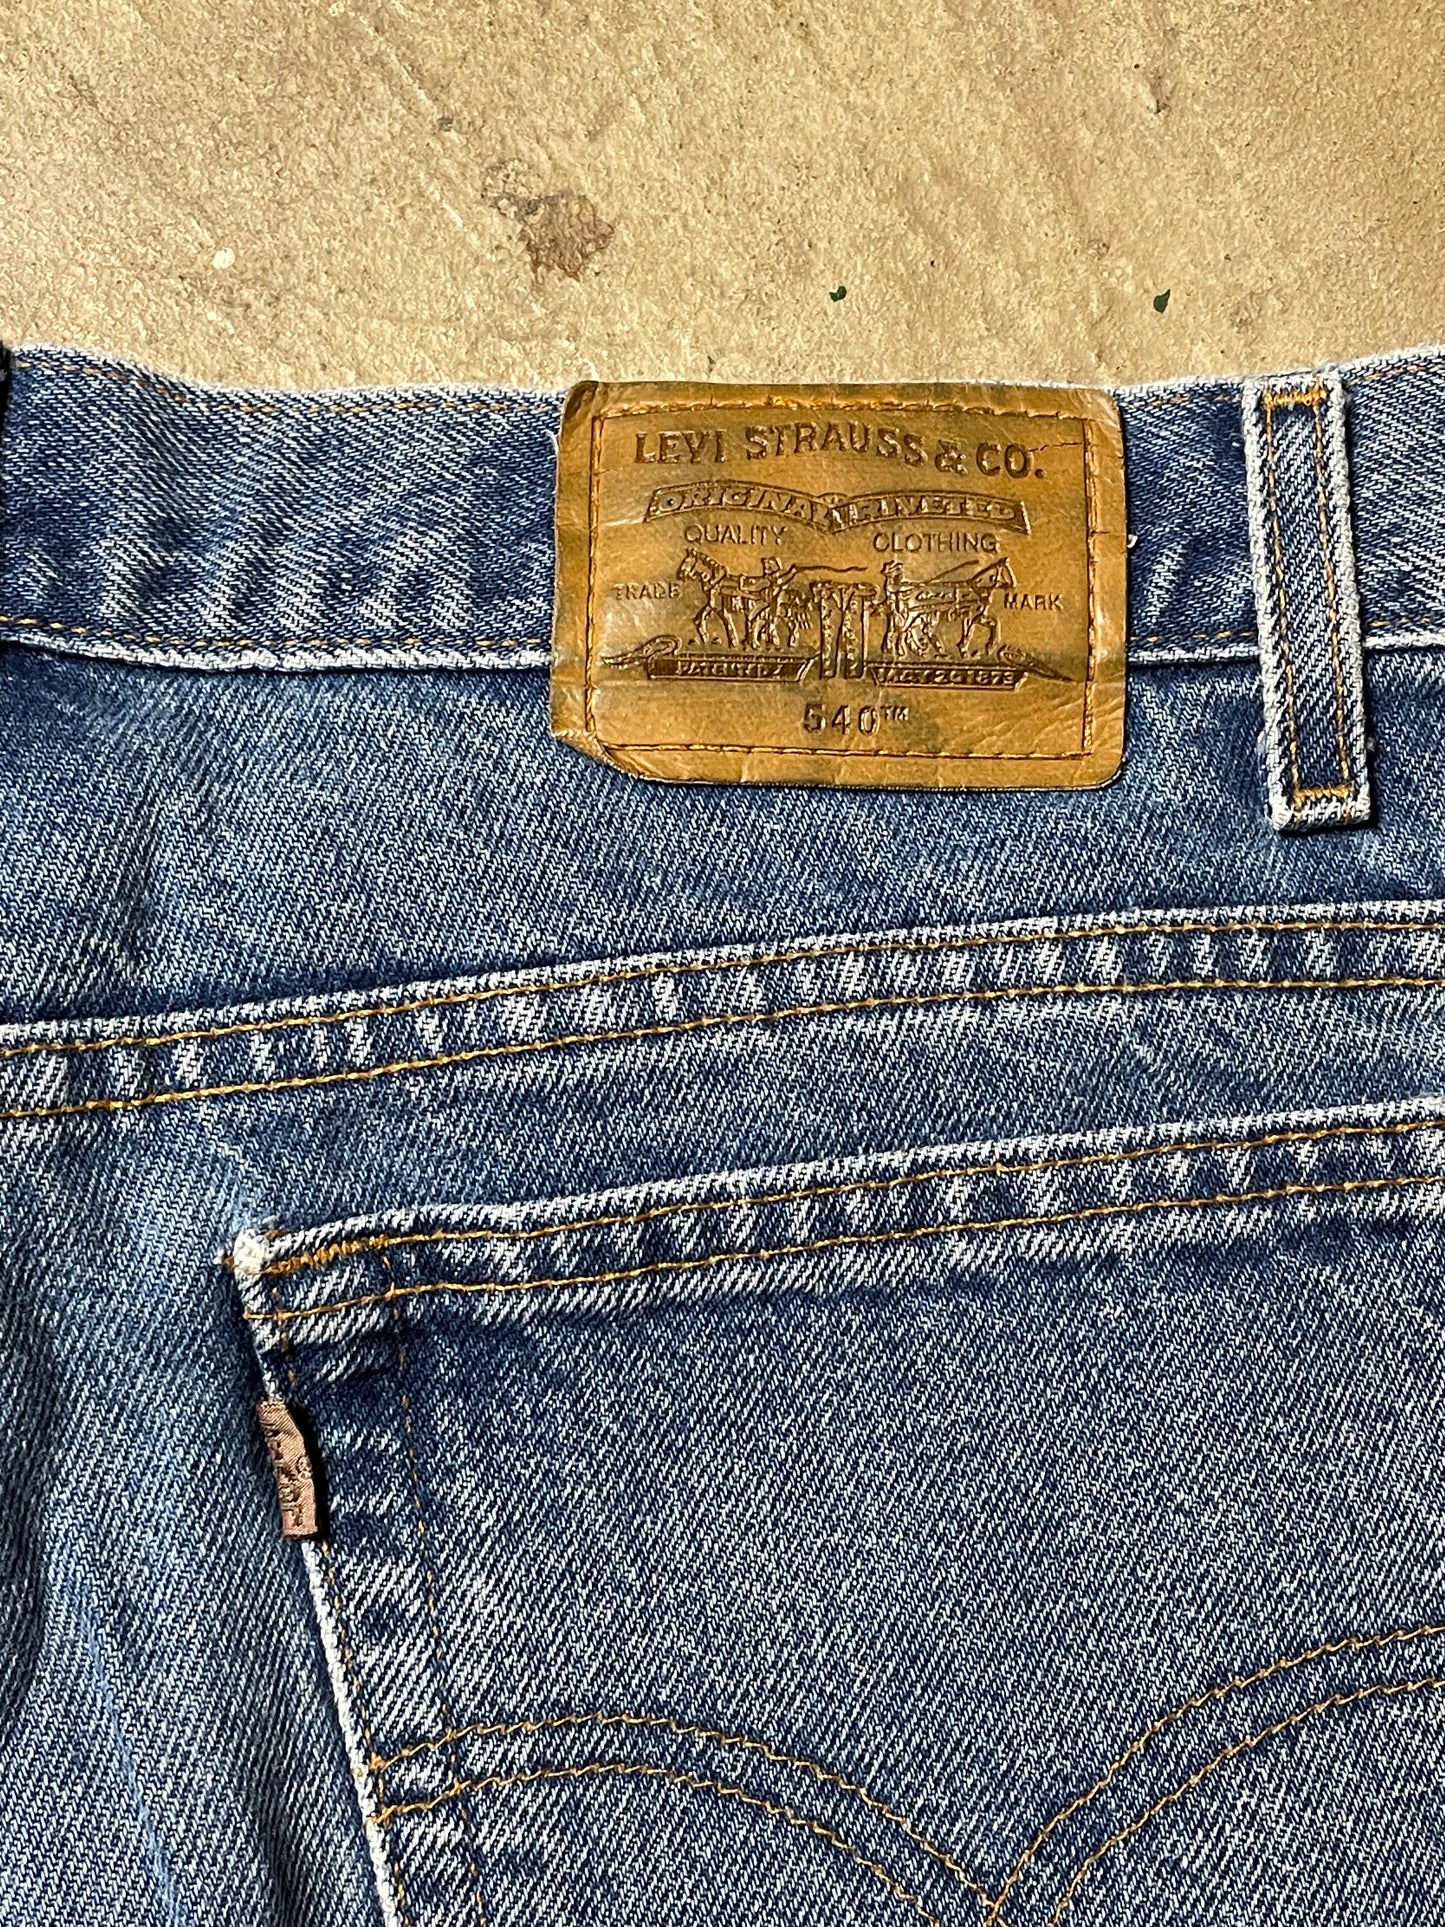 Vintage Brown Tab 540 Levi’s Jeans